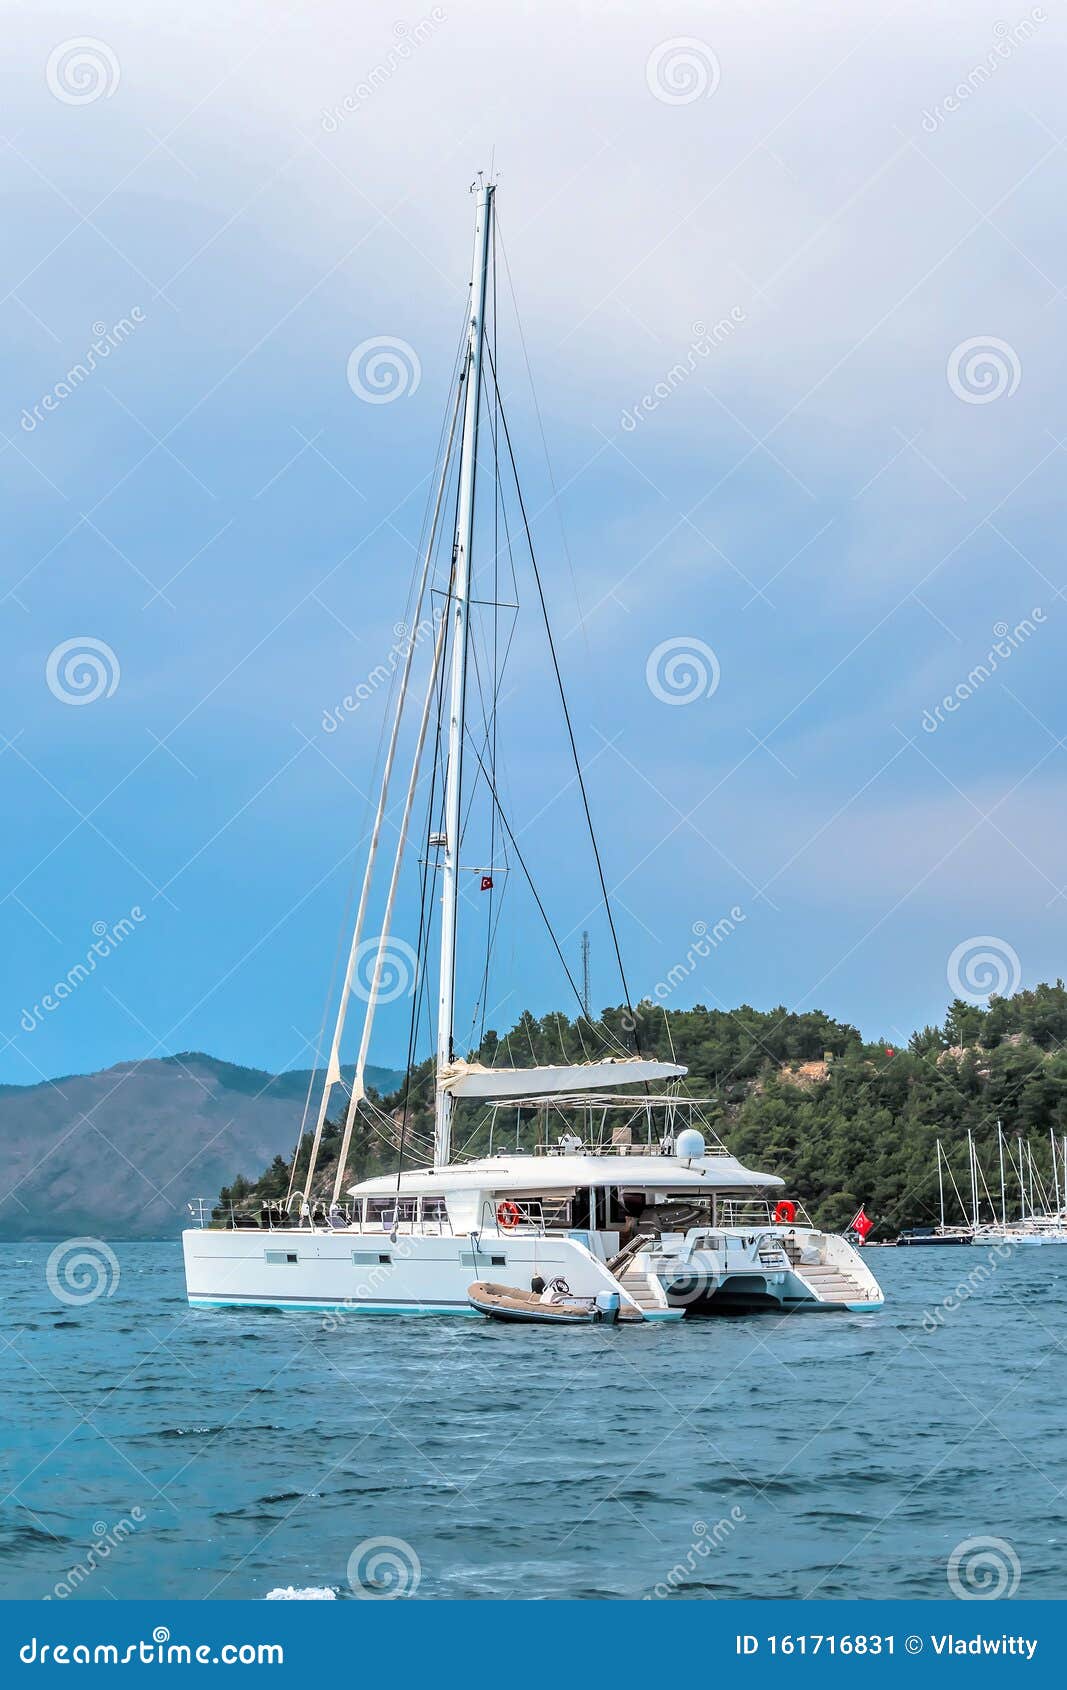 blue lagoon catamaran